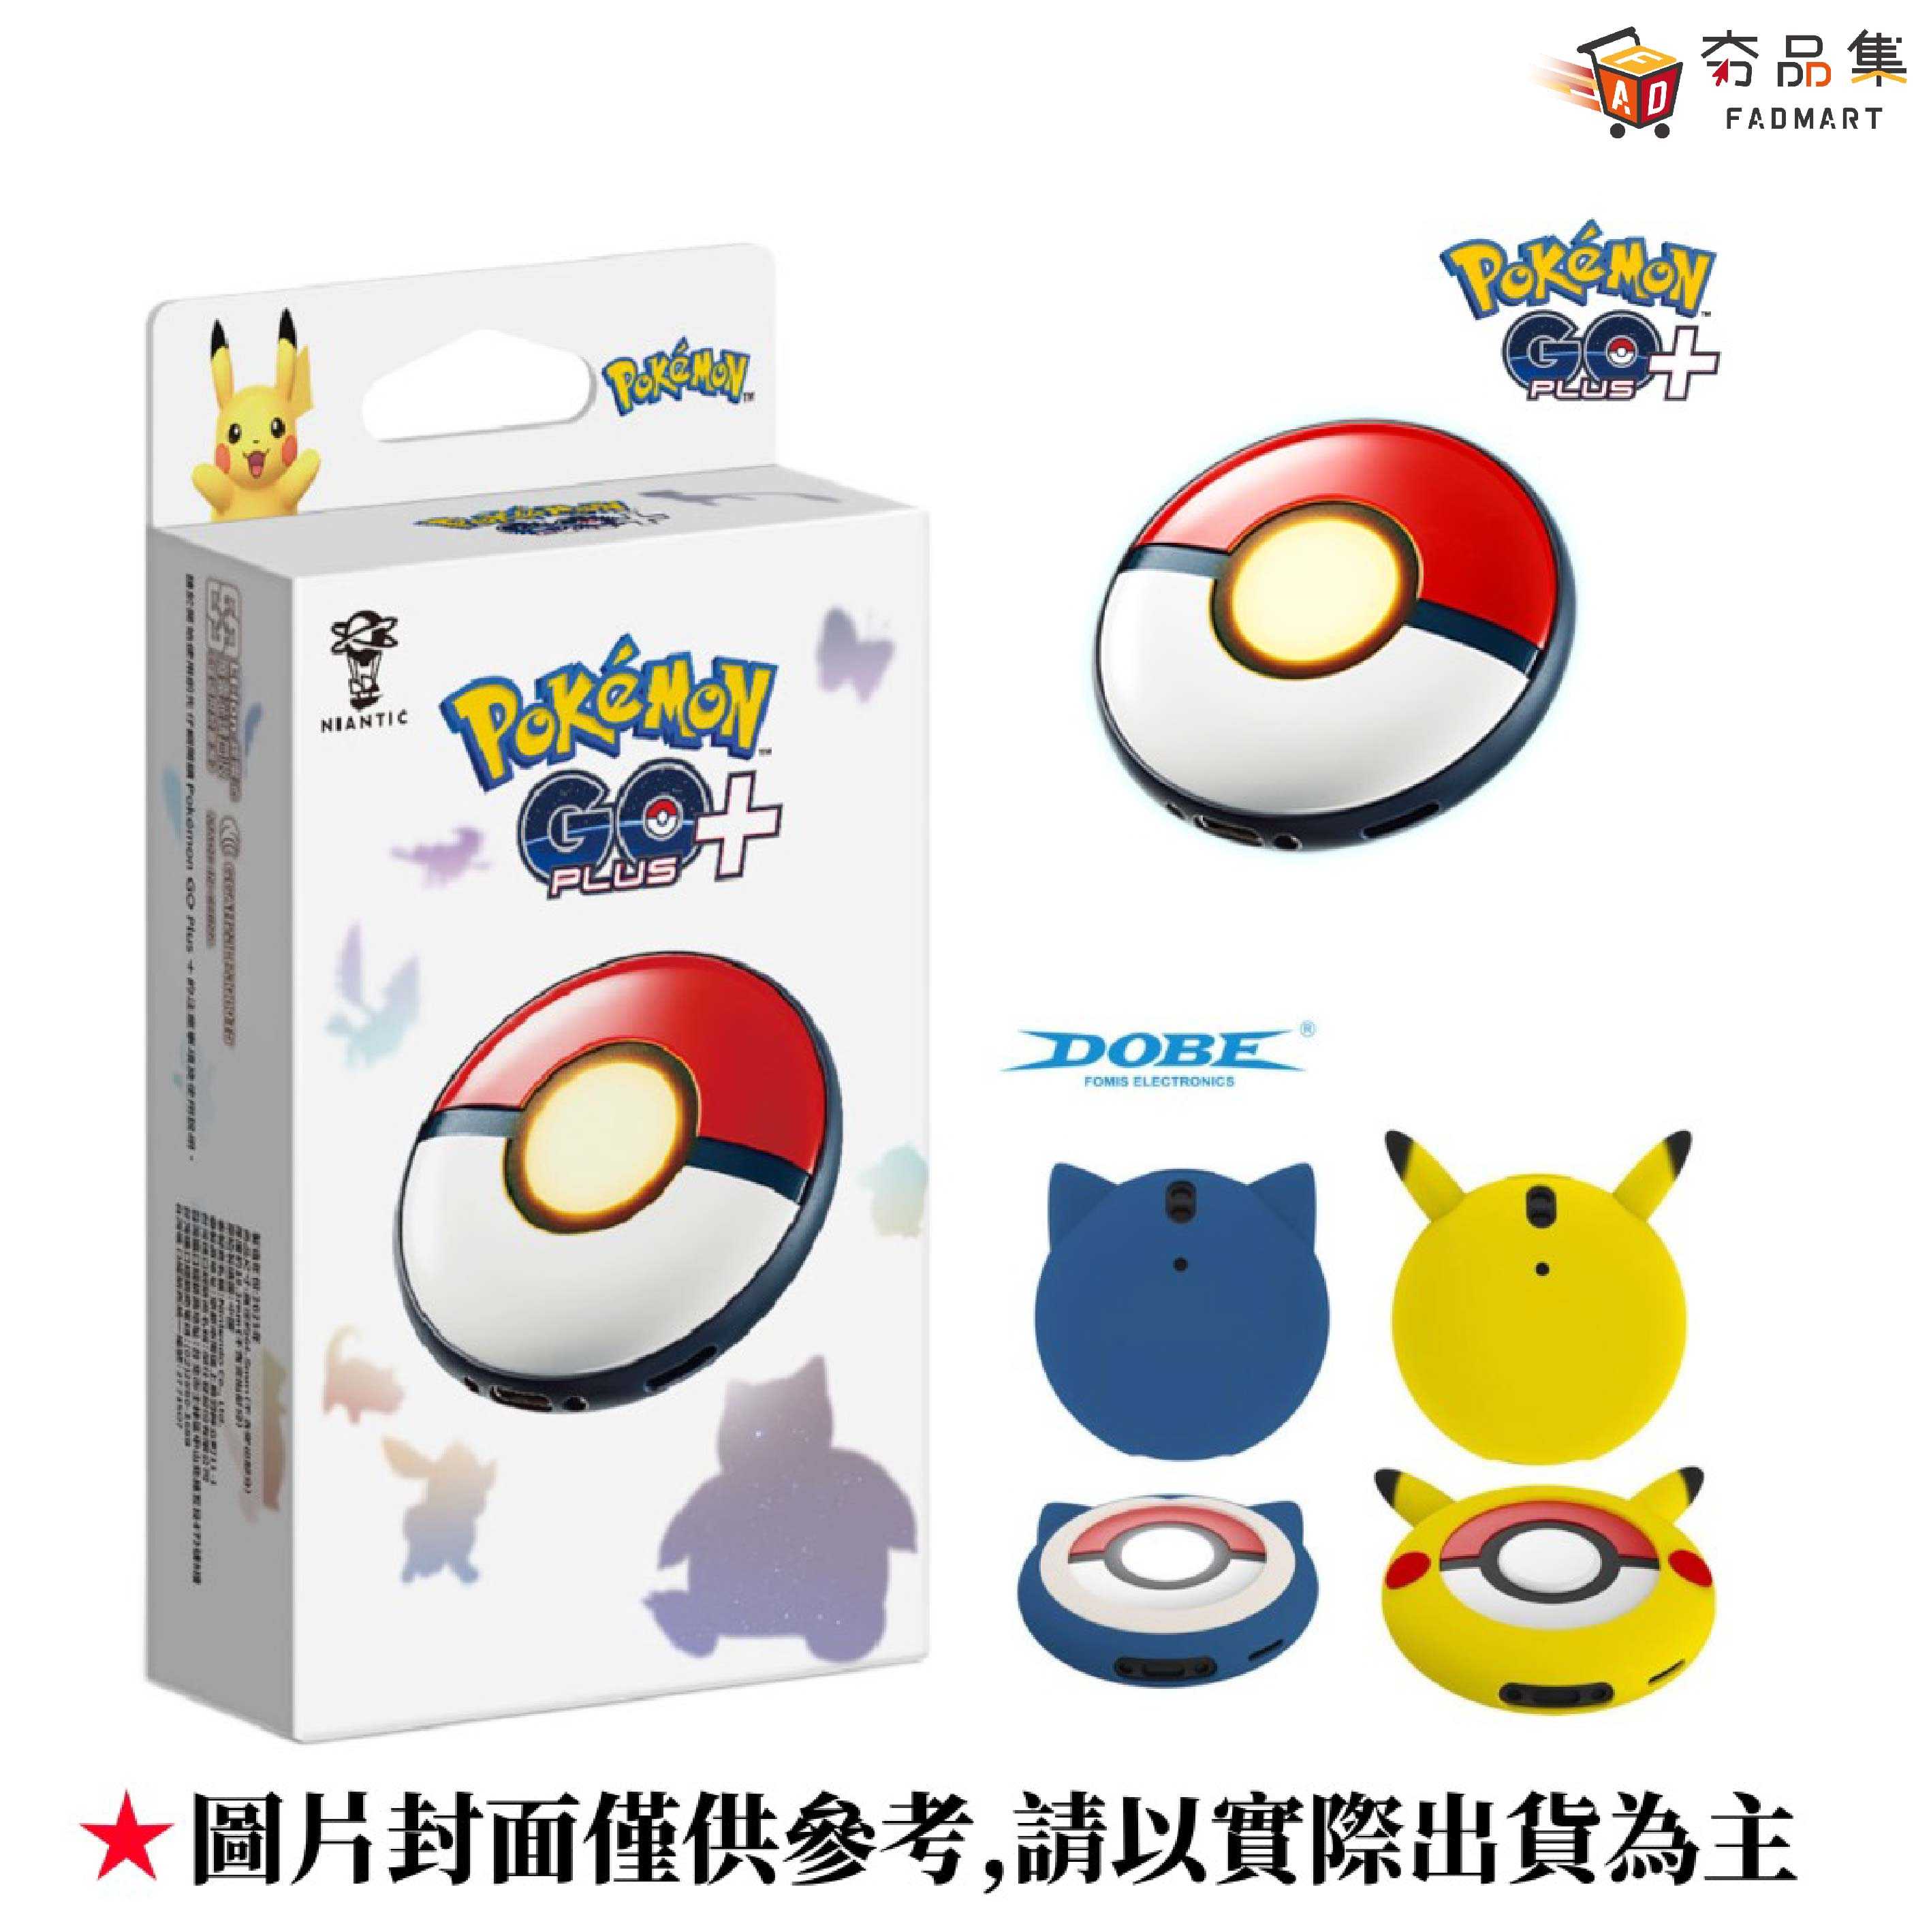 【夯品集】Pokémon GO Plus+ 寶可夢Pokemon Sleep睡眠監測可攜帶裝置+保護殼